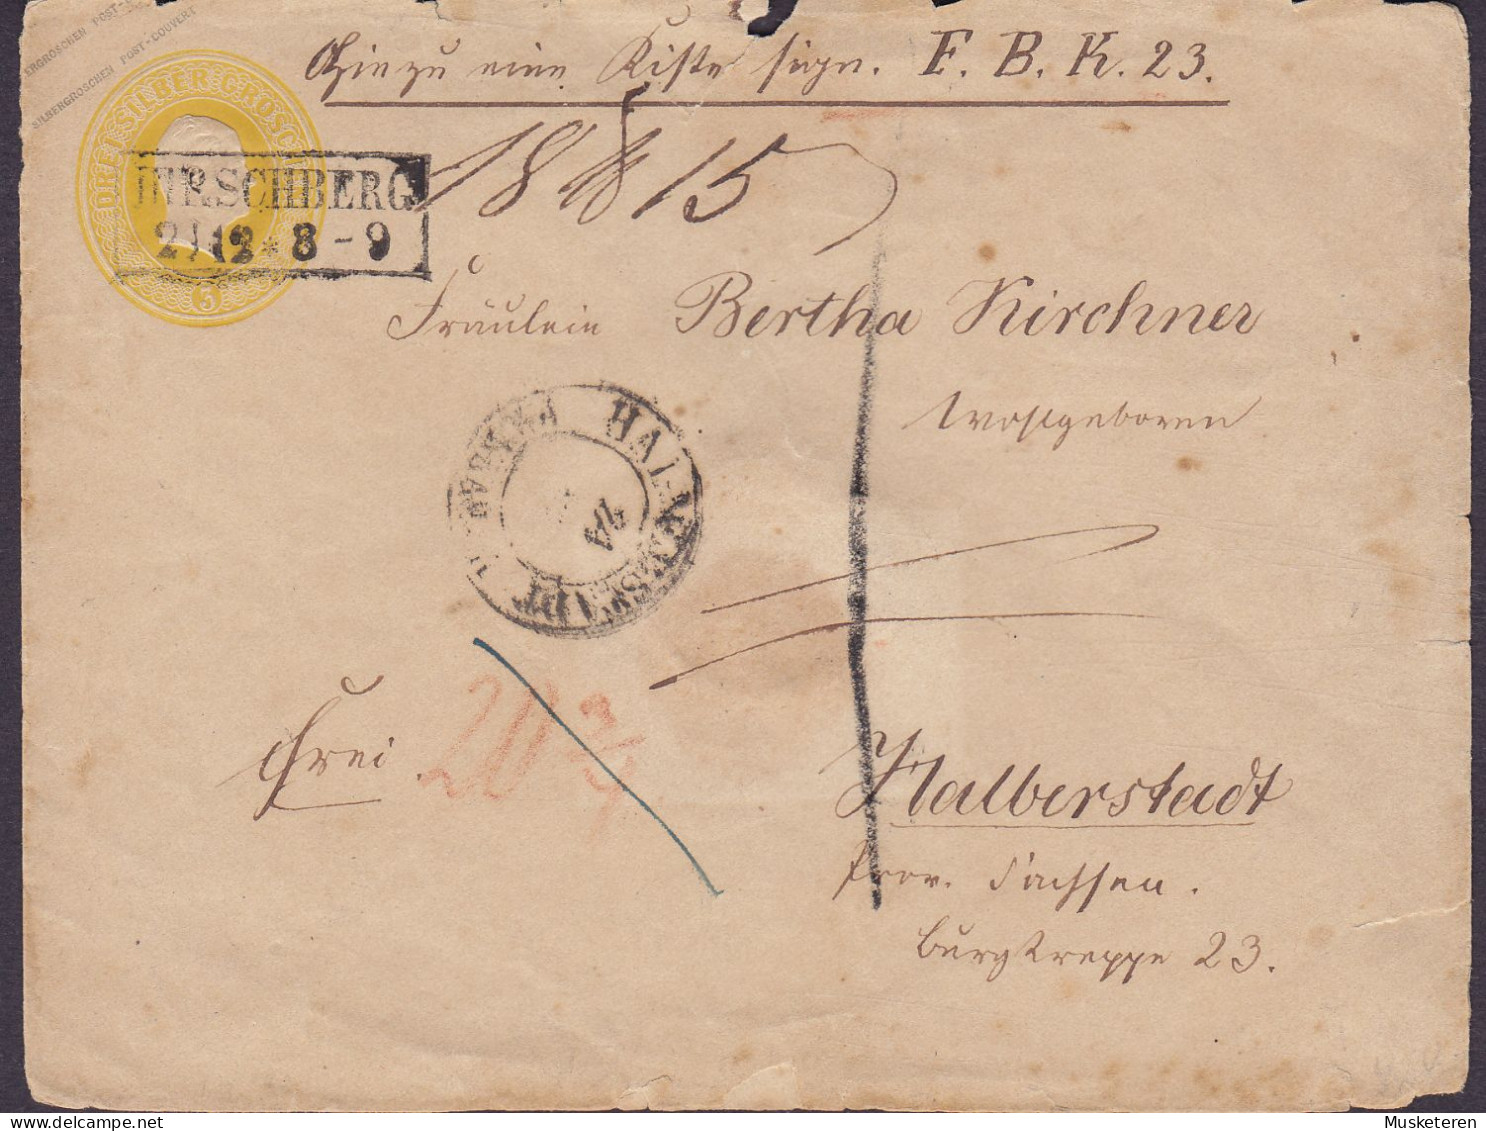 Preussen Postal Stationery Ganzsache 3 SILBER GROSCHEN Boxed HIRSCHBERG 2/12 8-9 Cds. HALBERSTADT (Arr.) Sachsen-Anhalt - Ganzsachen